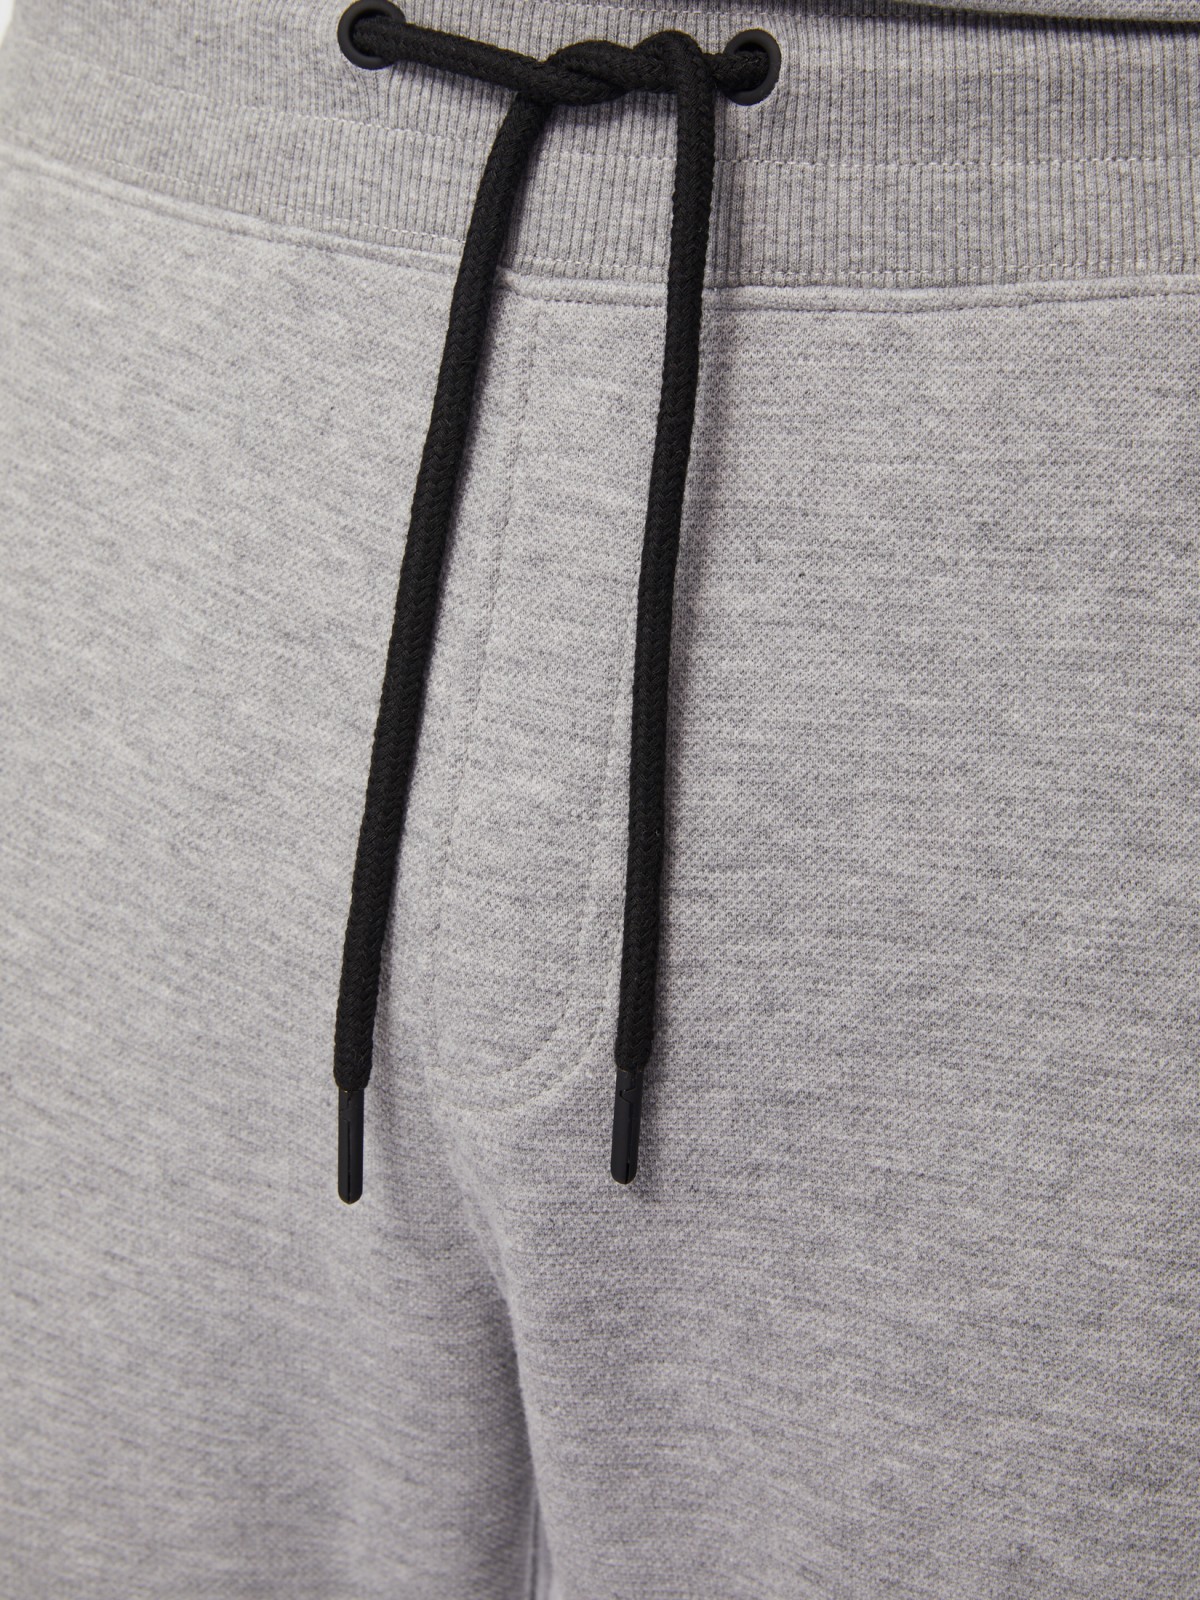 Трикотажные брюки-джоггеры в спортивном стиле zolla 014217679033, цвет серый, размер M - фото 4